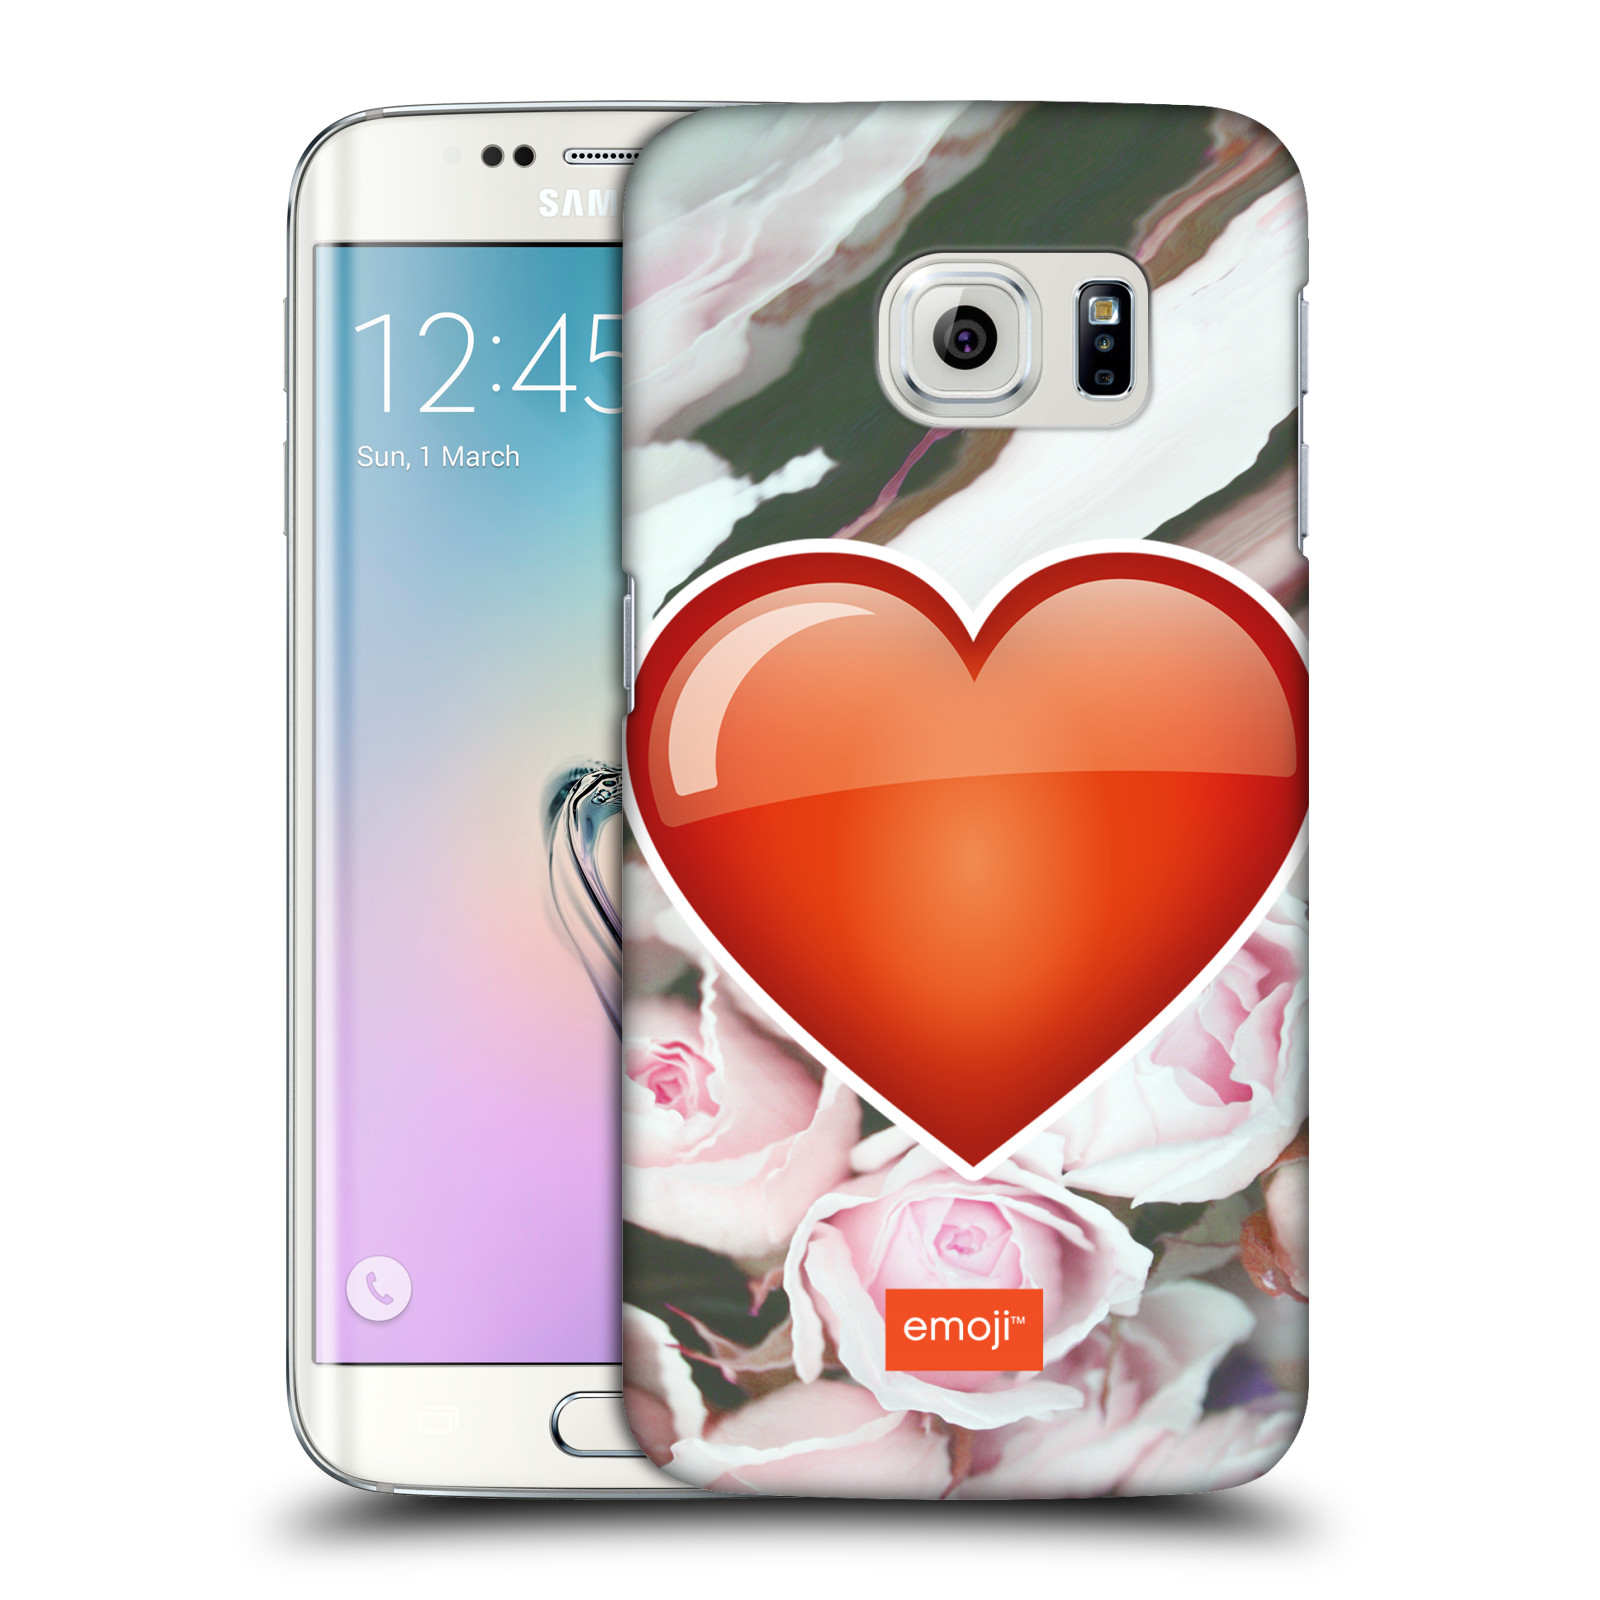 Pouzdro na mobil Samsung Galaxy S6 EDGE - HEAD CASE - Emoji srdíčko